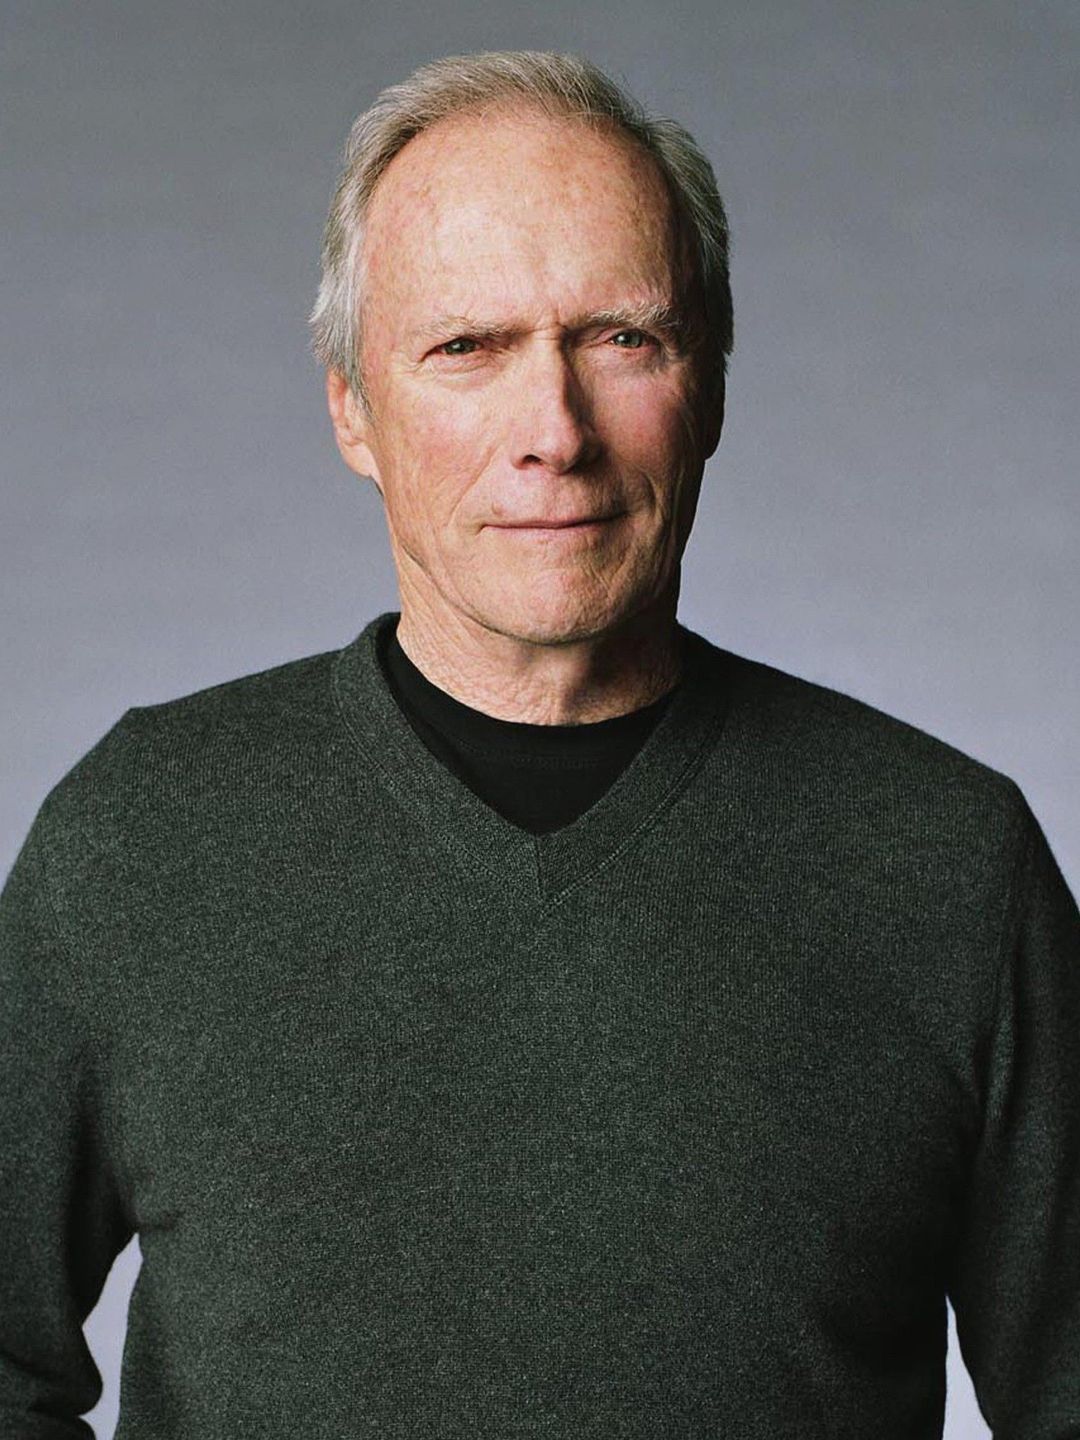 Clint Eastwood bio